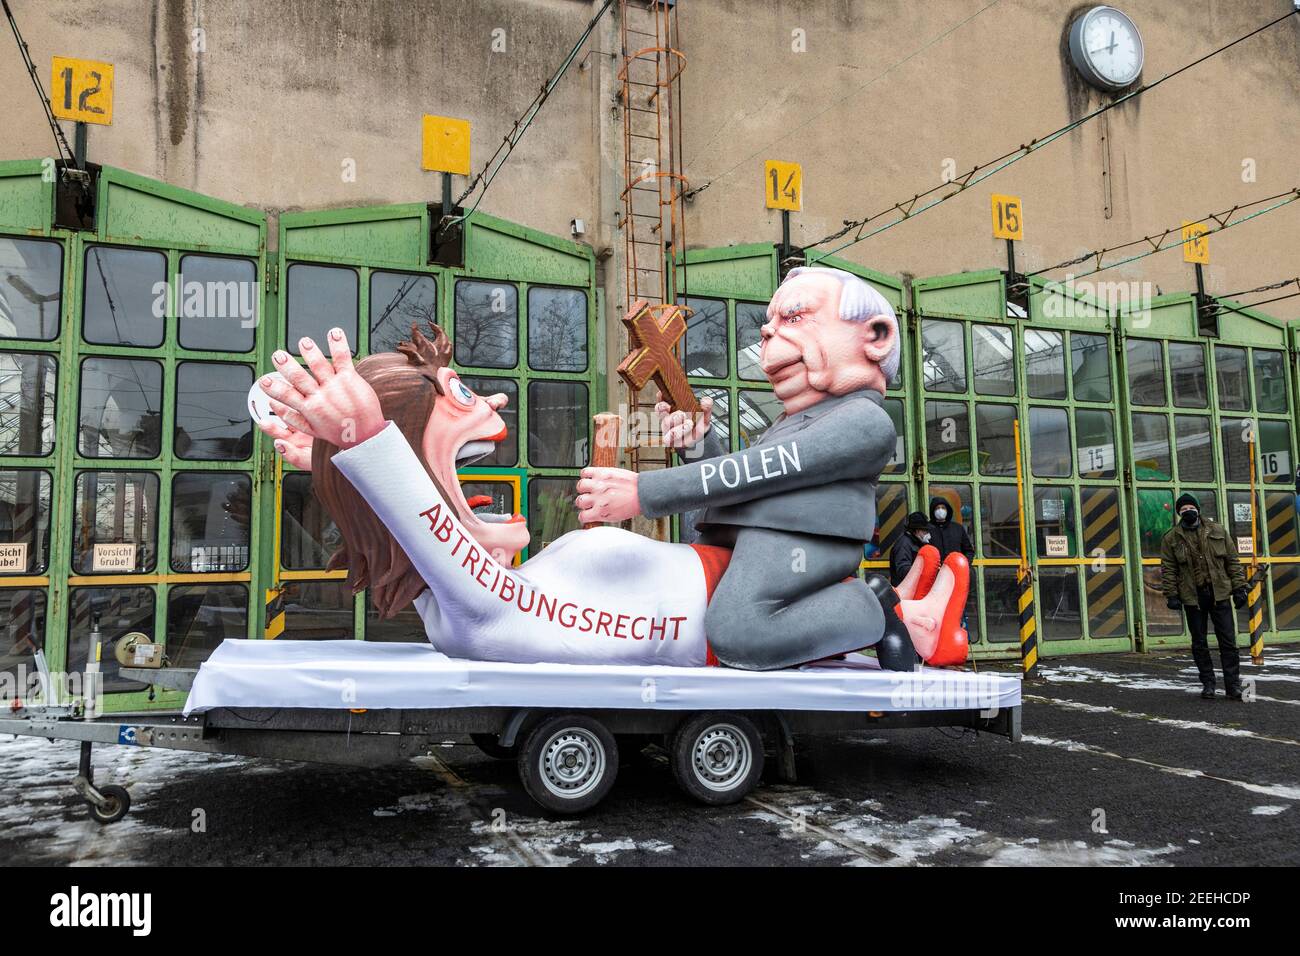 Flote por las estrictas leyes de aborto en Polonia. Carrozas de carnaval creadas por el artista alemán Jacques Tilly fueron presentadas y luego expuestas en todo Dusseldorf como el desfile principal de carnaval fue cancelado debido a la pandemia de coronavirus. Foto de stock